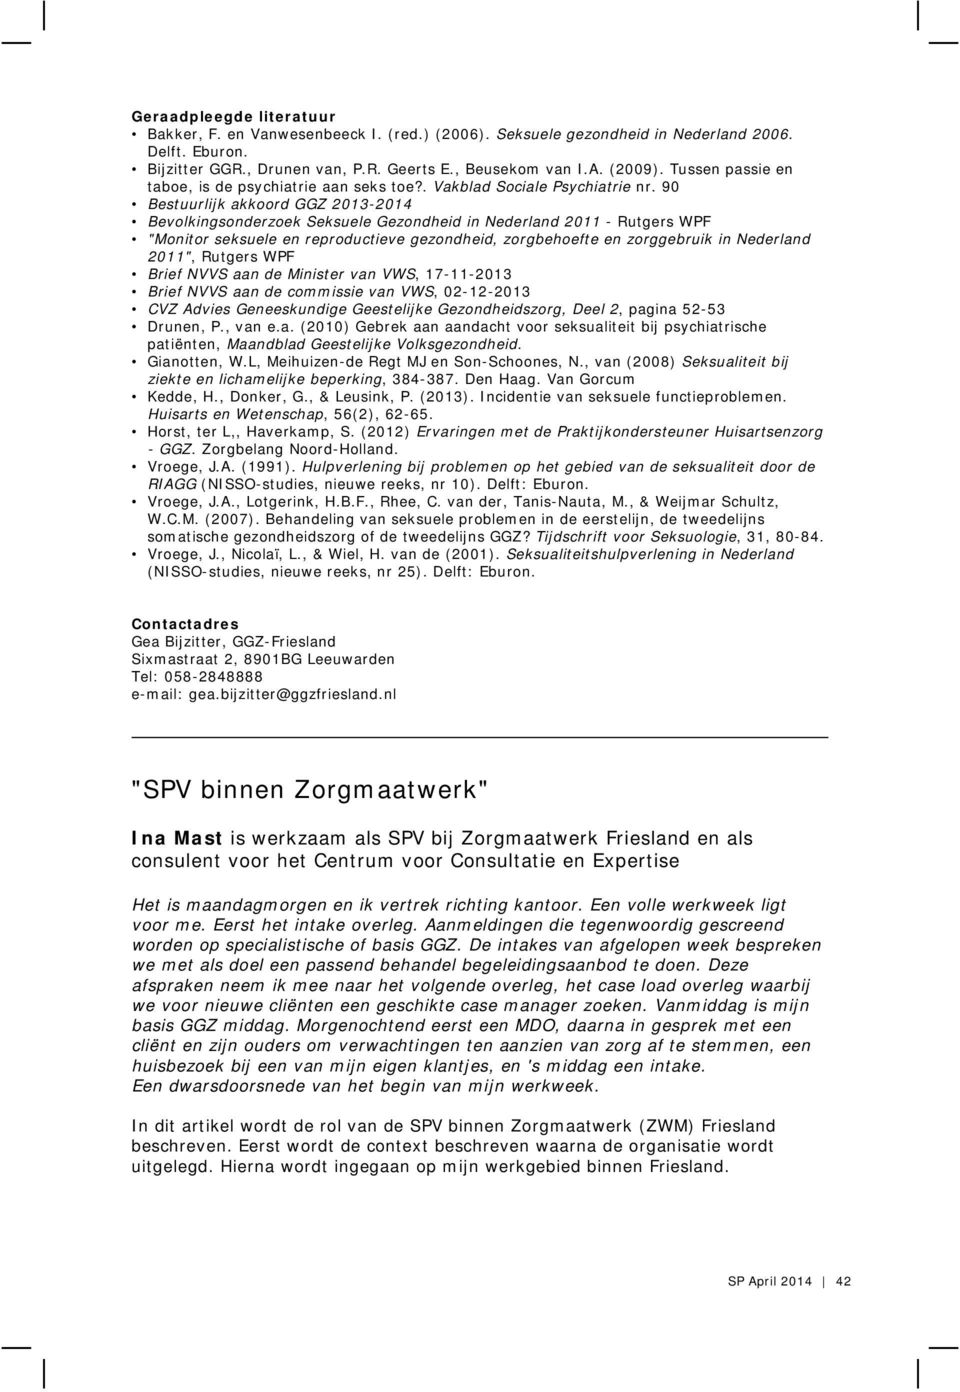 90 Bestuurlijk akkoord GGZ 2013-2014 Bevolkingsonderzoek Seksuele Gezondheid in Nederland 2011 - Rutgers WPF "Monitor seksuele en reproductieve gezondheid, zorgbehoefte en zorggebruik in Nederland